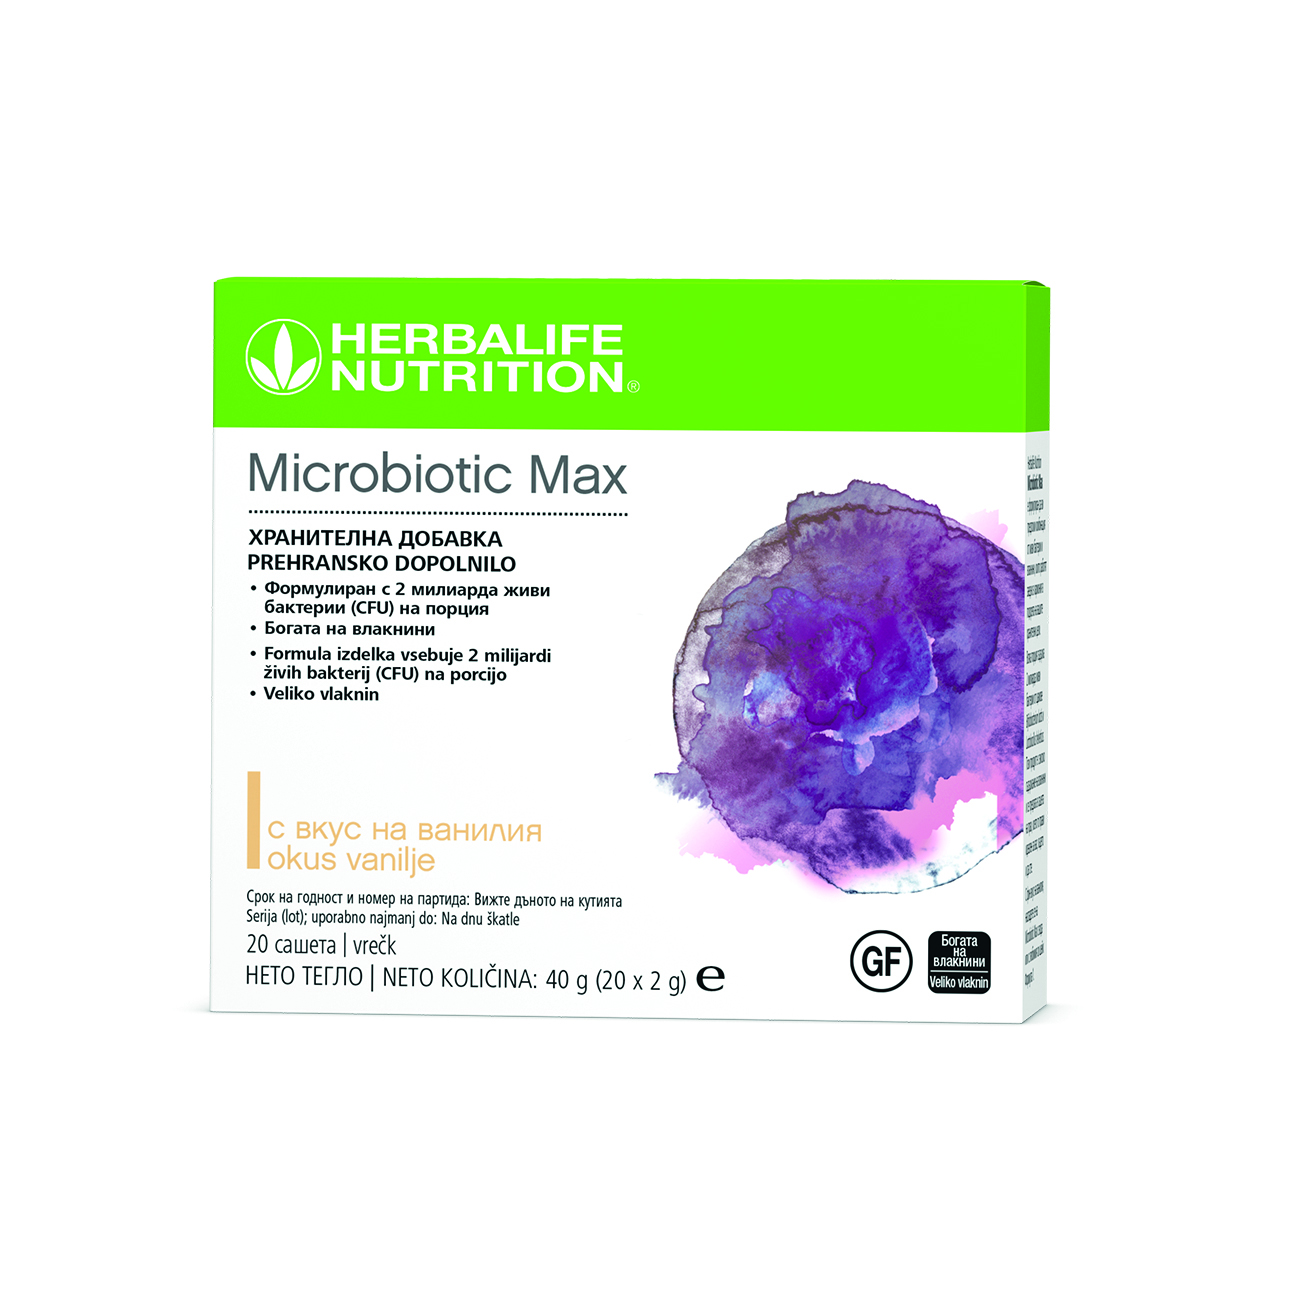 Microbiotic Max, хранителна добавка на прах, формулирана с комбинация от пробиотик и пребиотични фибри.